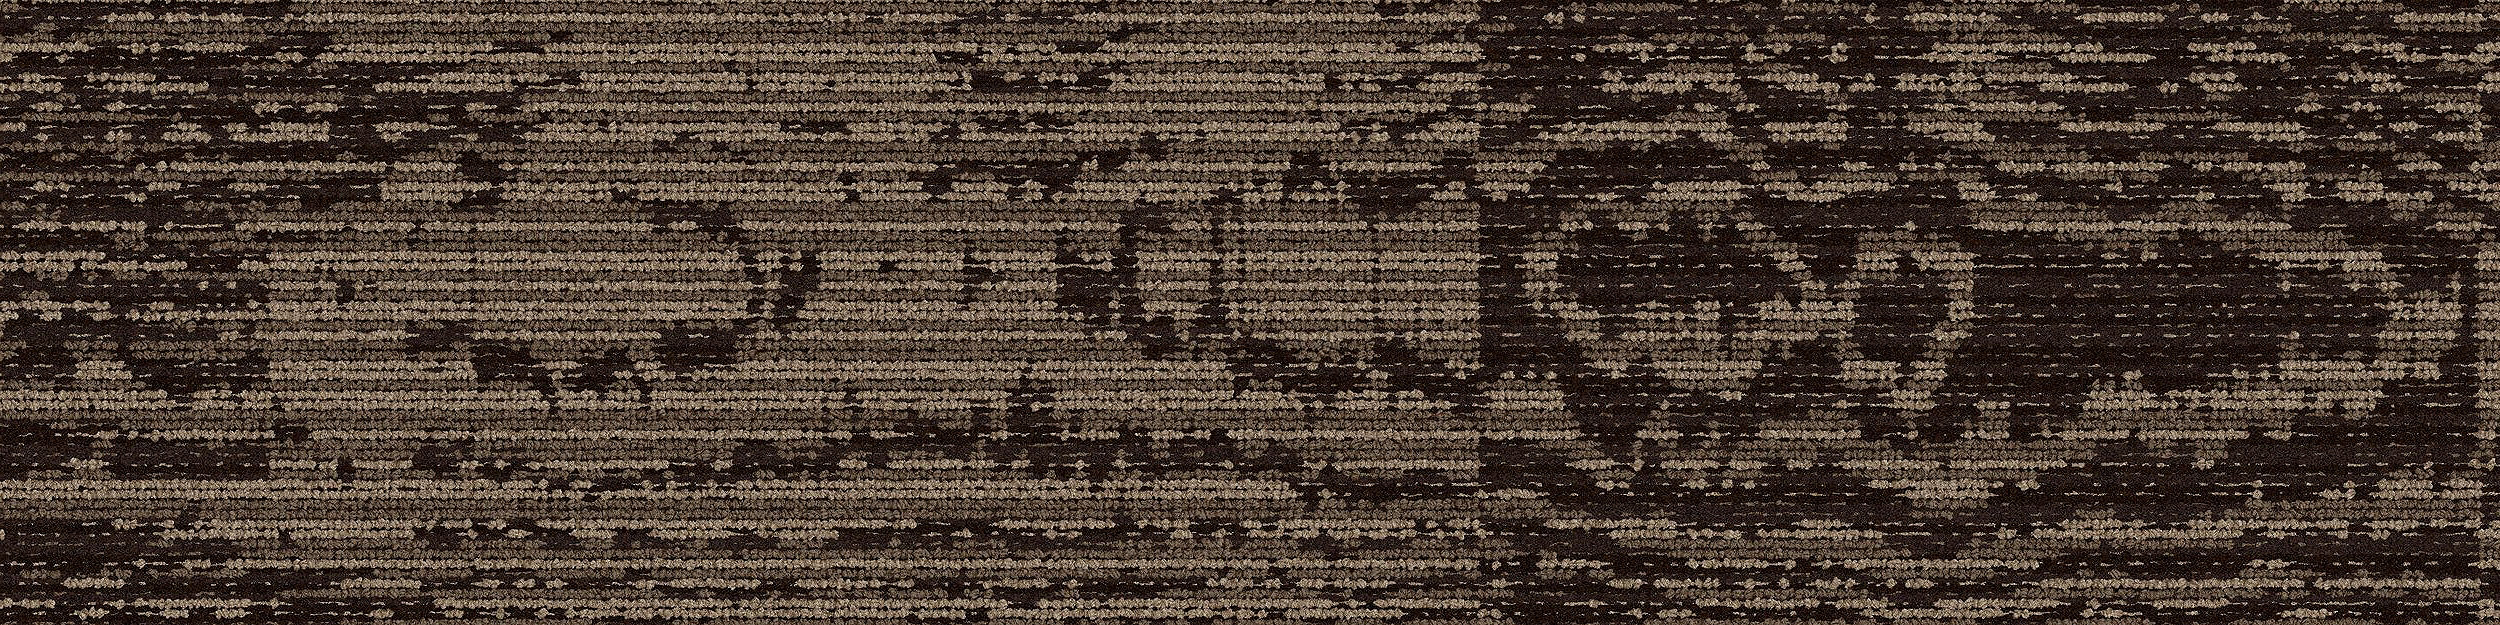 GN156 Carpet Tile In Mouse imagen número 4